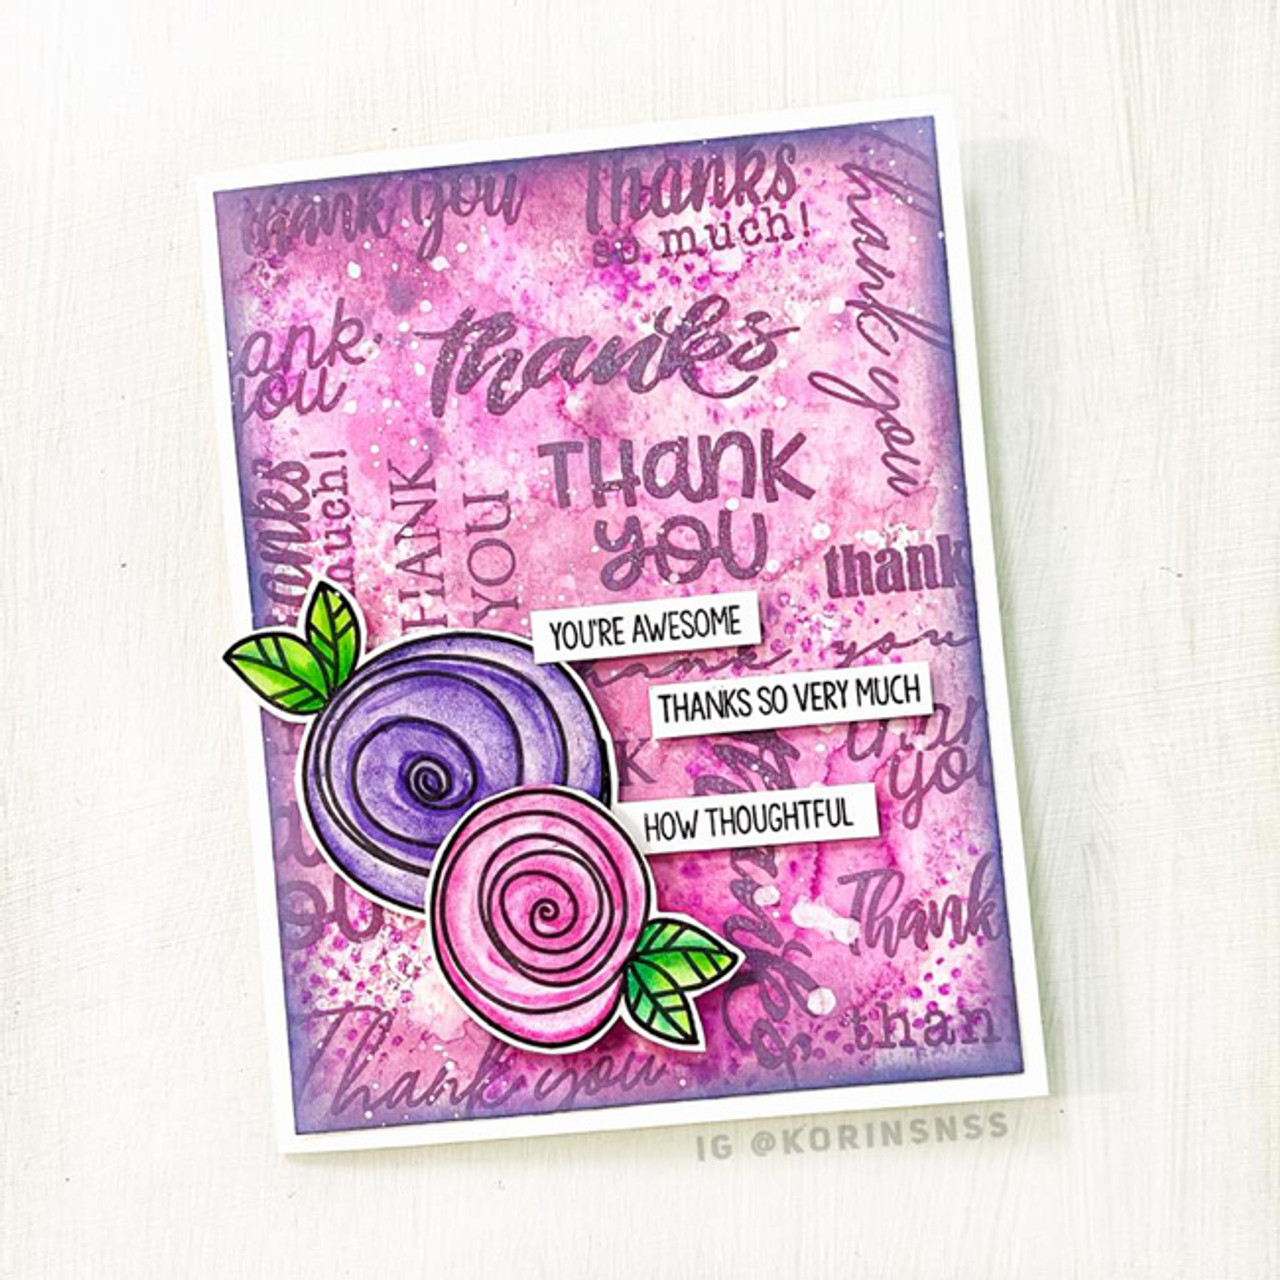 Ink Pad Holder Pink – Sweet Sentiment Stamps